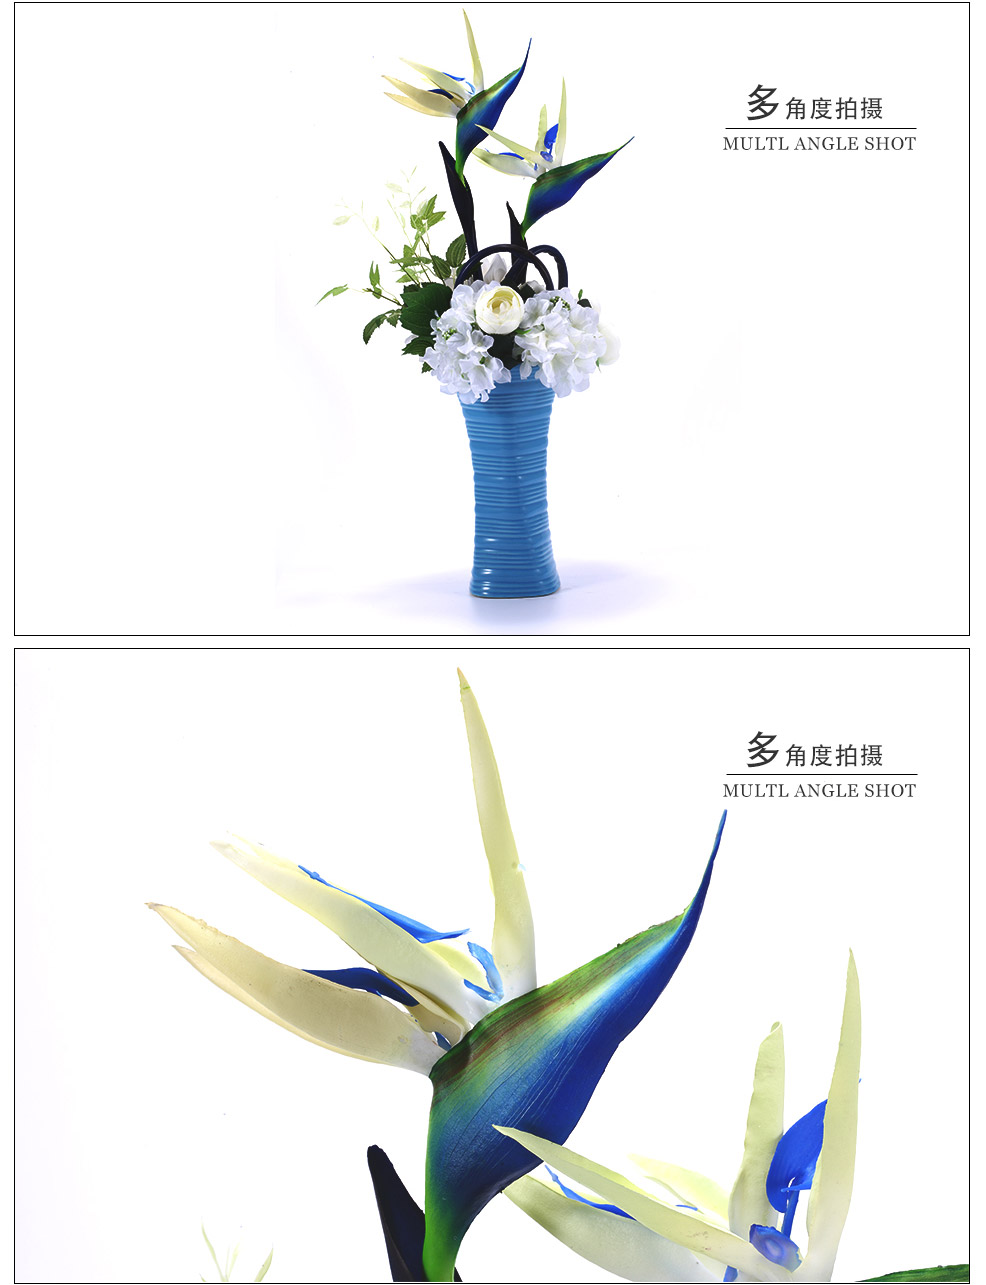 地中海风格蓝色花瓶白色兰花混式仿真花艺XL-1010-0142